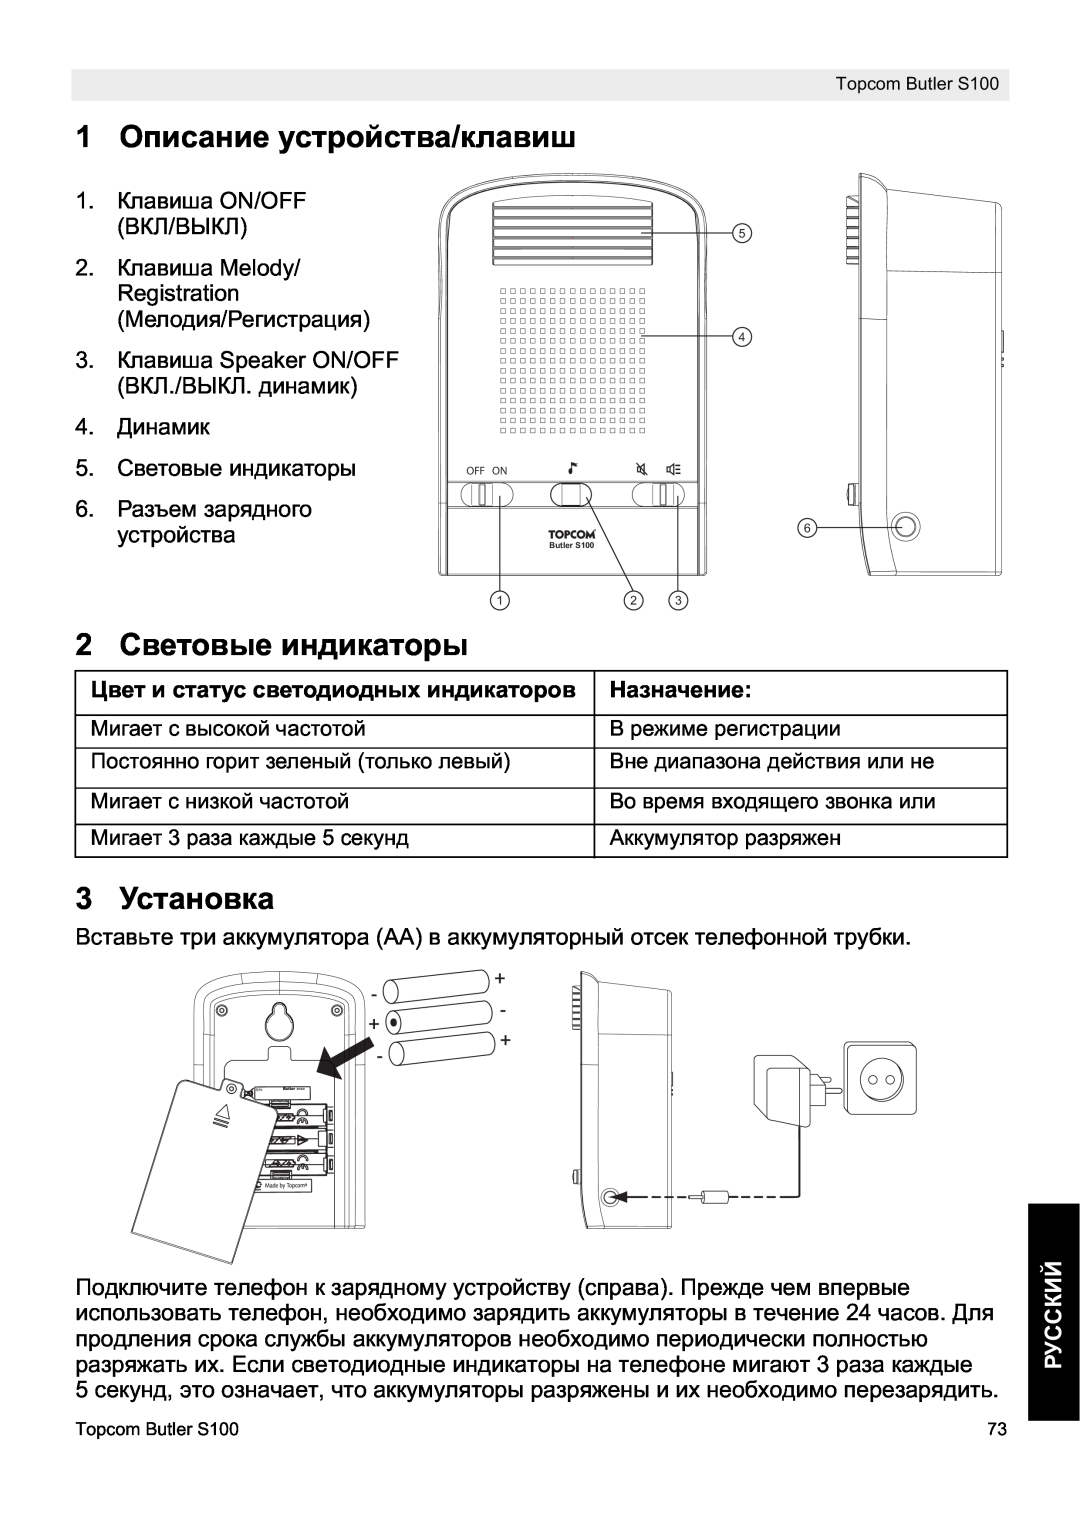 Topcom S100 manual do utilizador 1 Ɉɩɢɫɚɧɢɟ ɭɫɬɪɨɣɫɬɜɚ/ɤɥɚɜɢɲ, 2 ɋɜɟɬɨɜɵɟ ɢɧɞɢɤɚɬɨɪɵ, 3 ɍɫɬɚɧɨɜɤɚ, ɊɍɋɋɄɂɃ, ɇɚɡɧɚɱɟɧɢɟ 